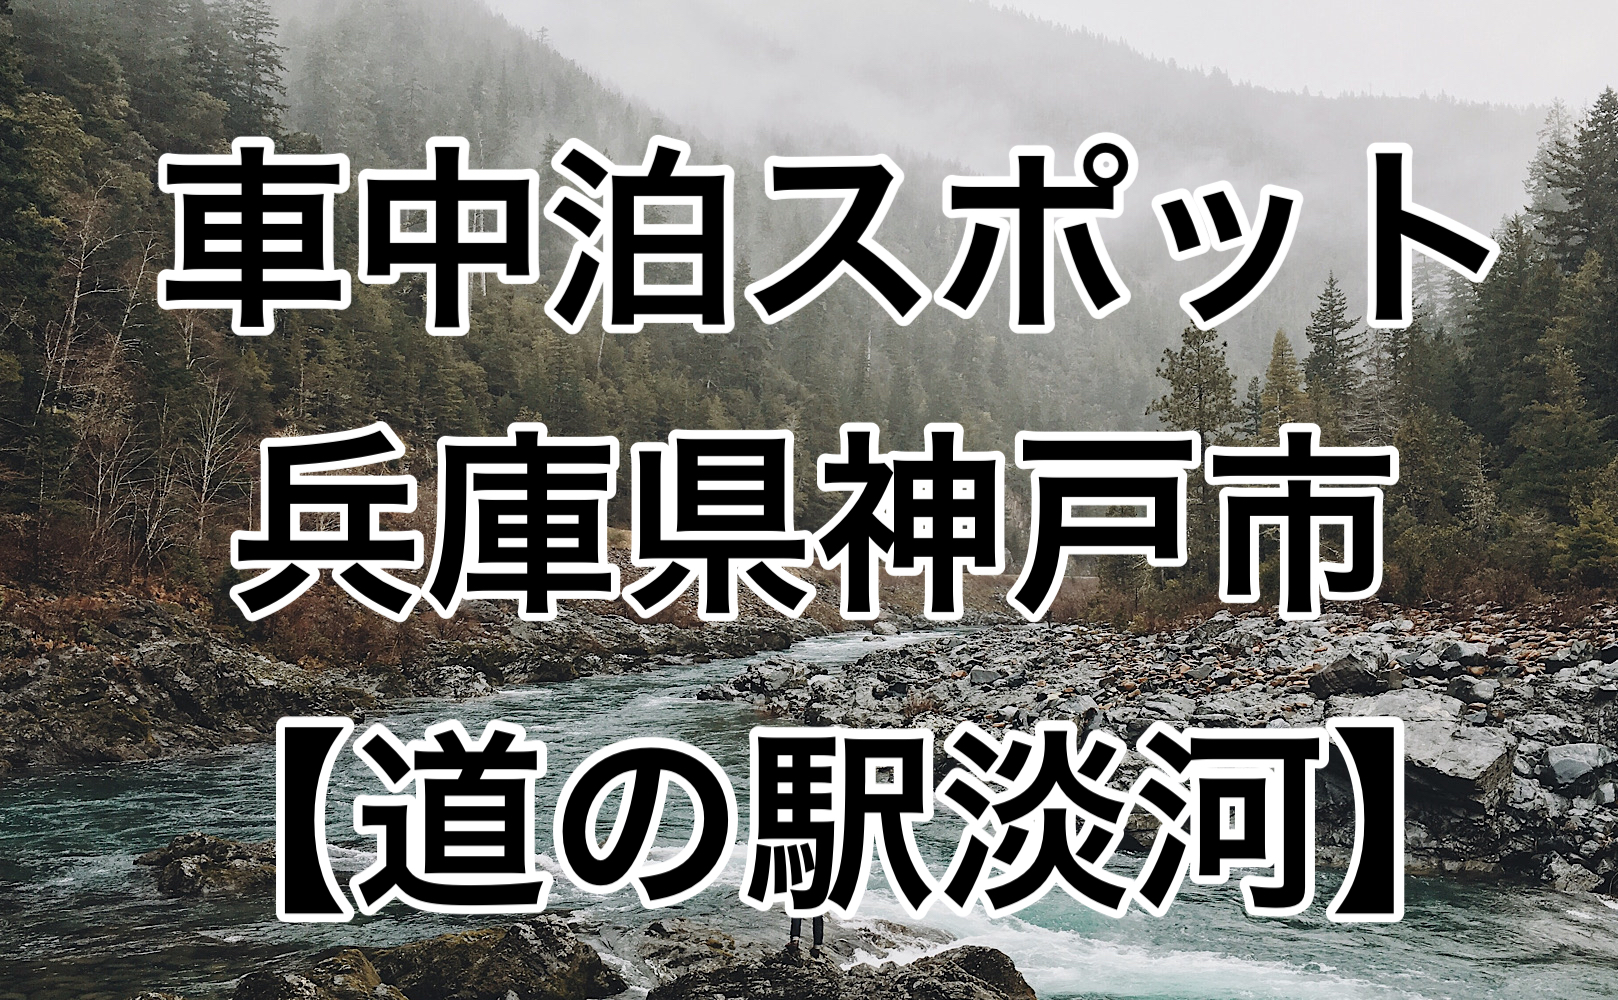 無料 神戸市内の臭い車中泊スポット 道の駅淡河 を紹介 車中泊女子 初心者向けバンライフブログ